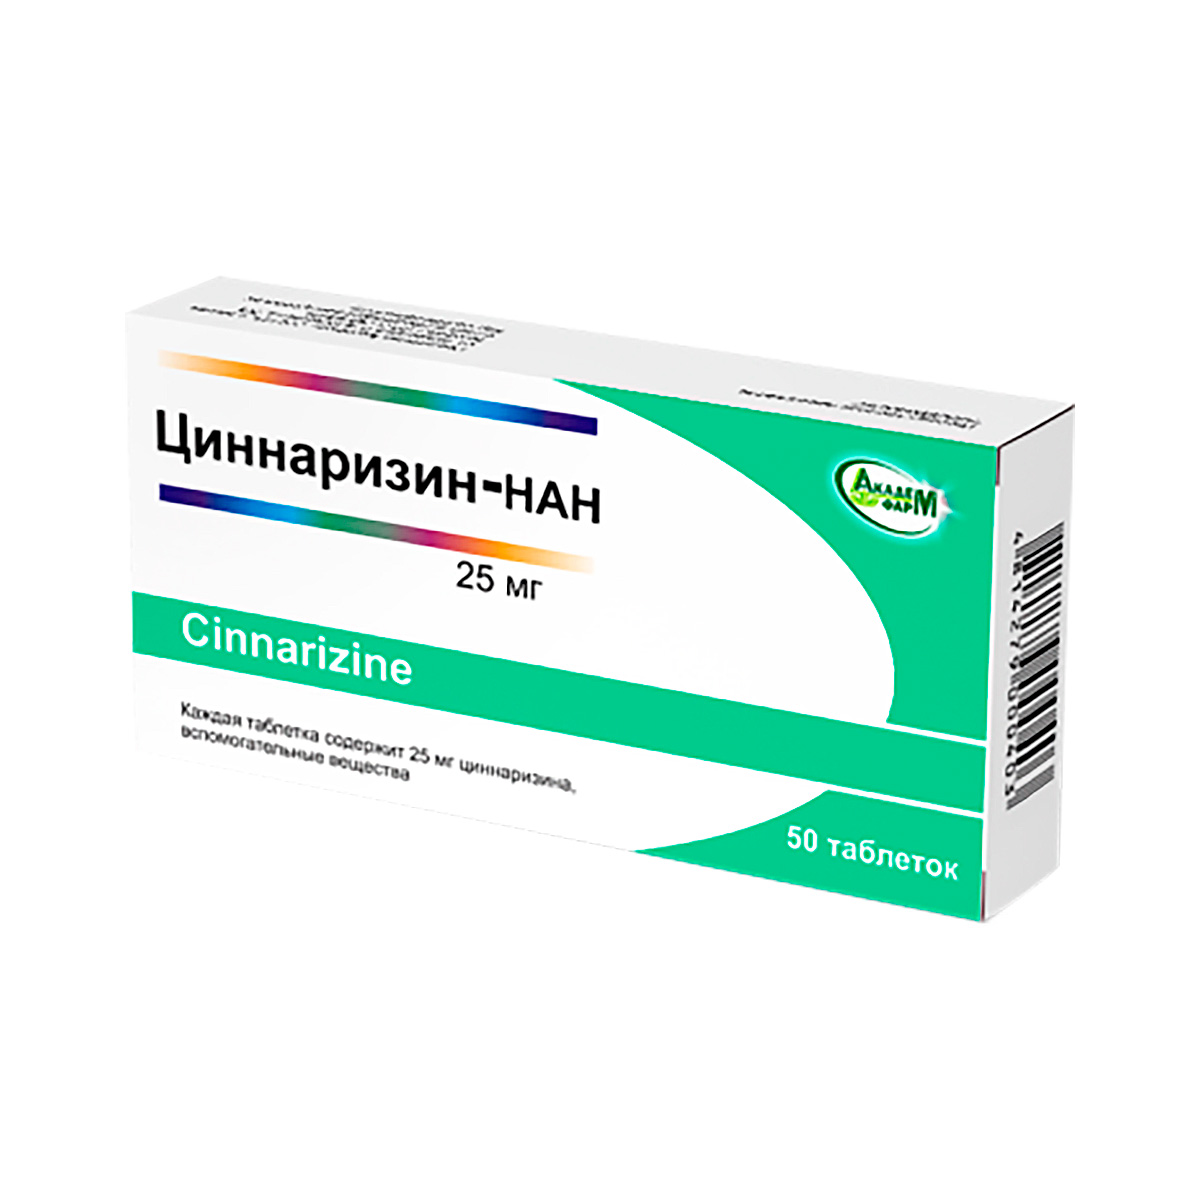 Циннаризин-НАН 25 мг таблетки 50 шт